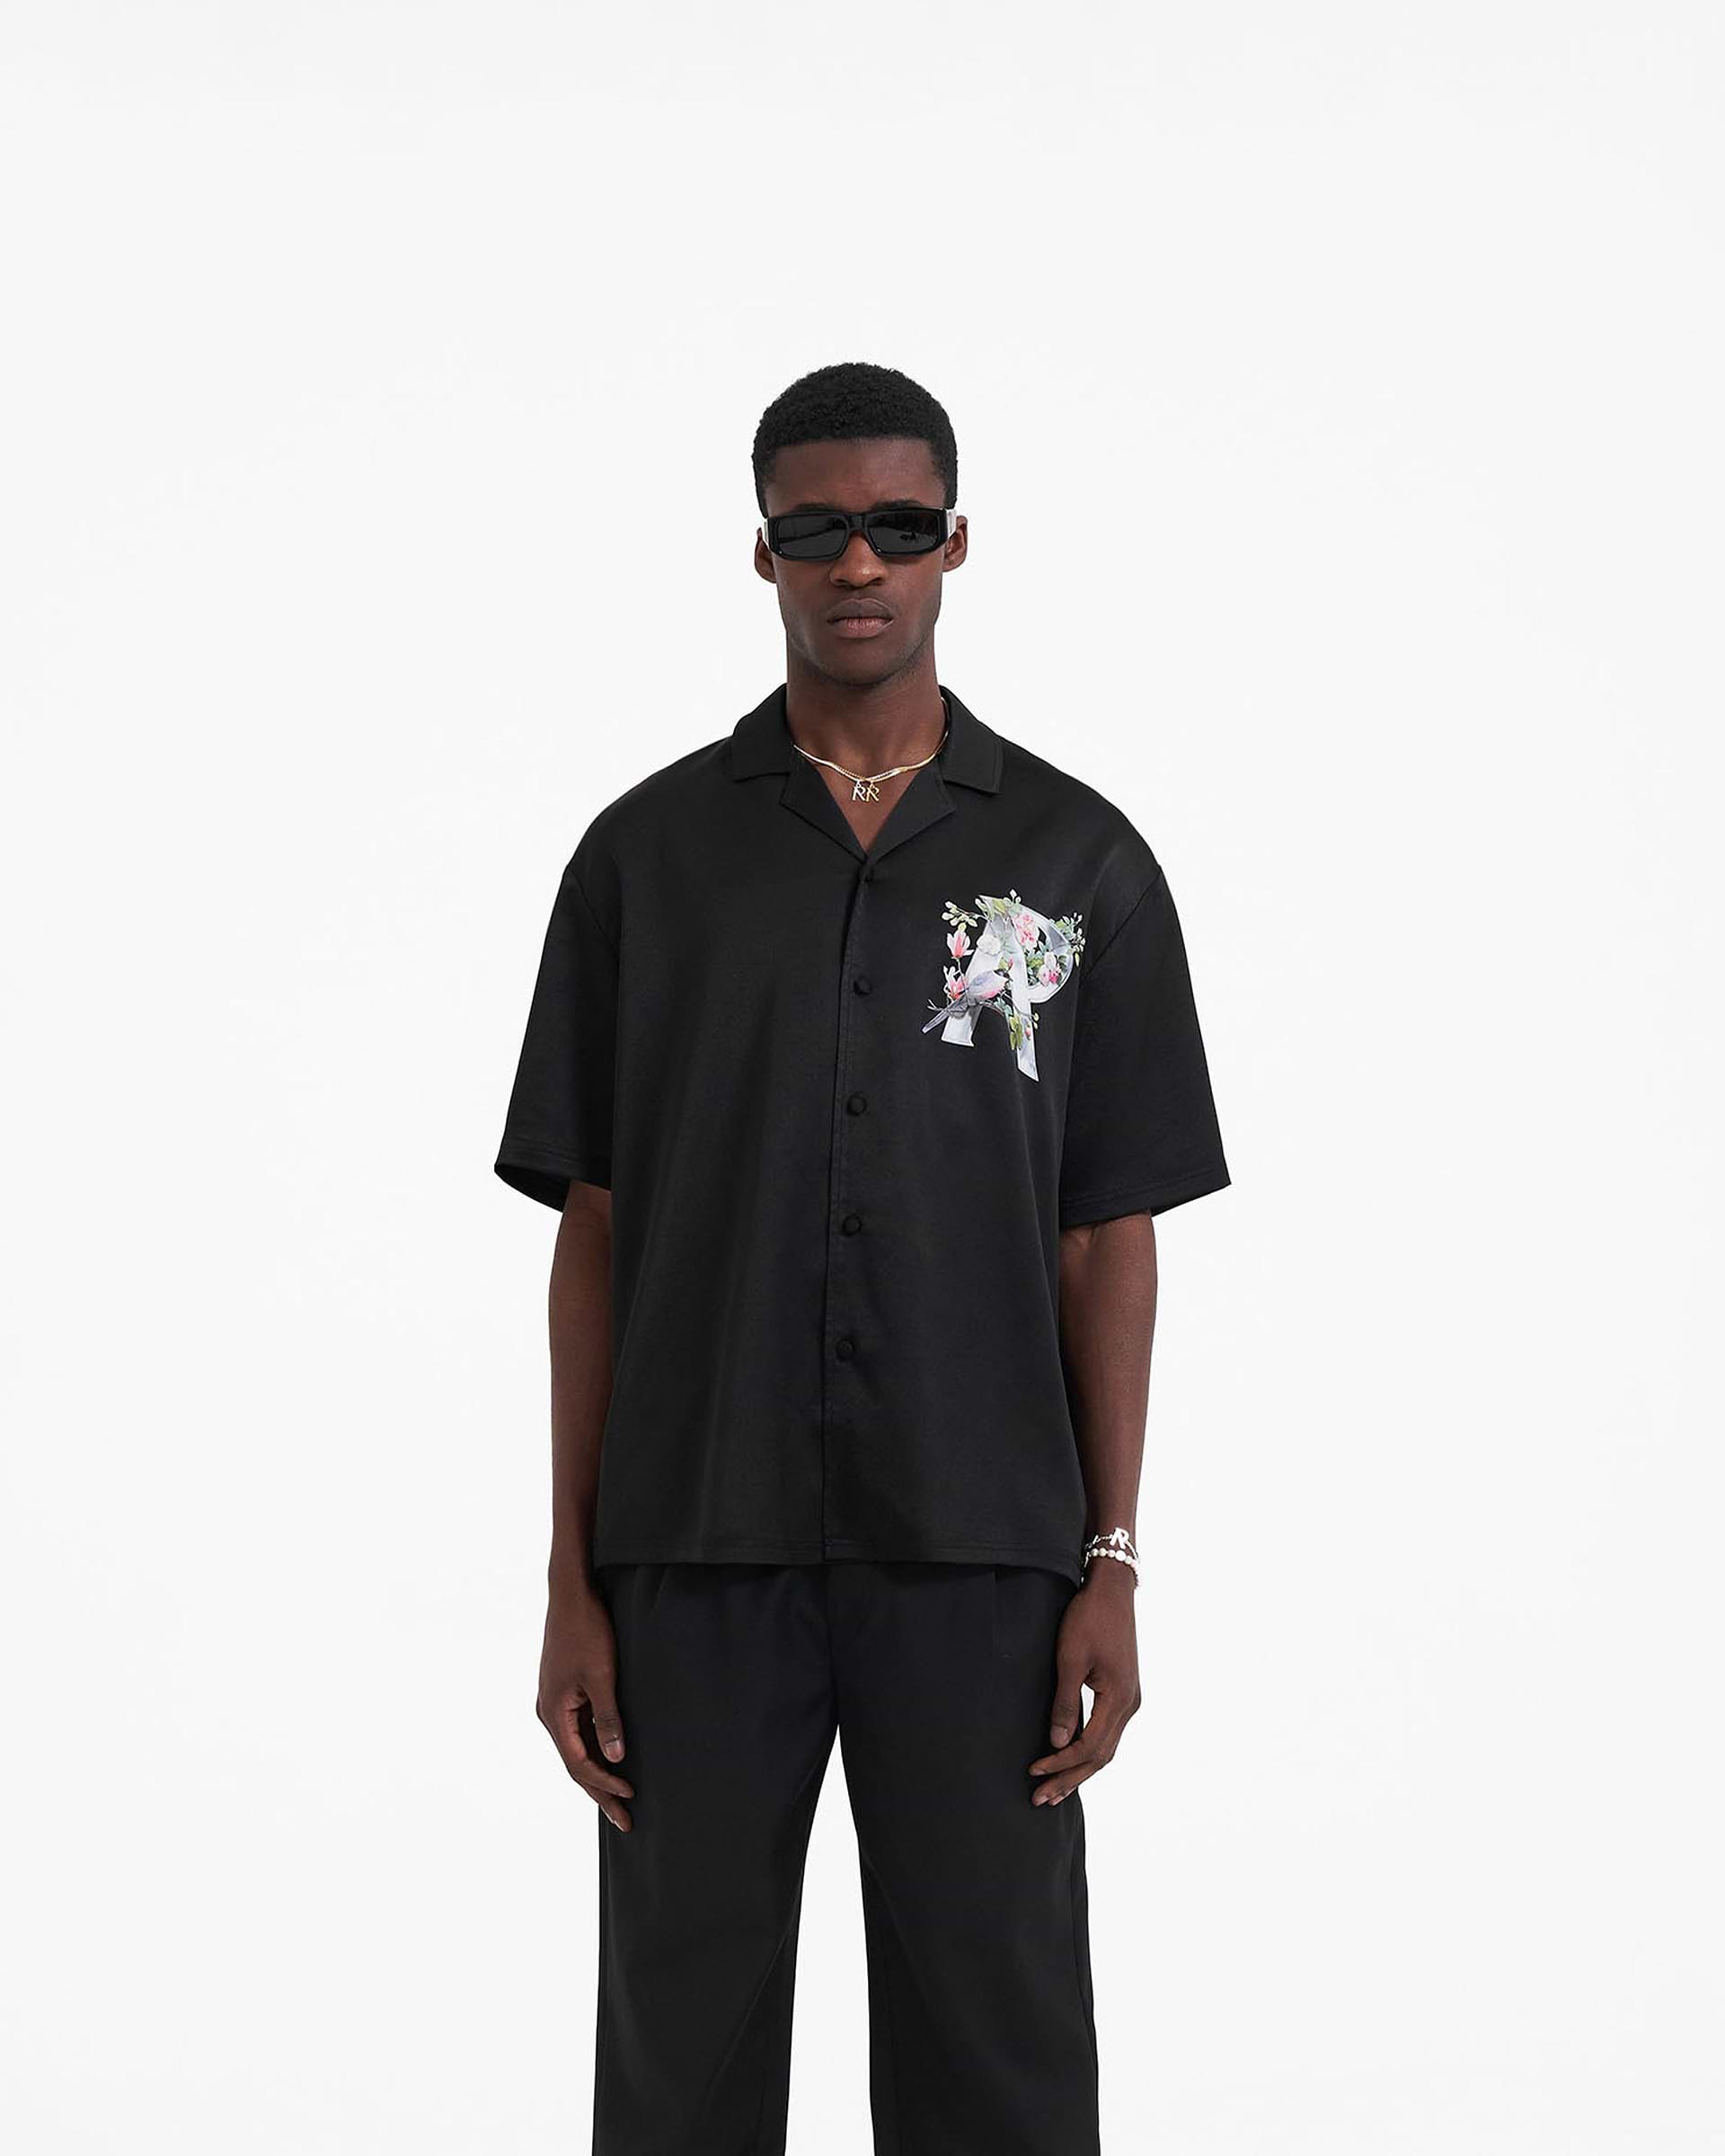 Floral Initial Shirt | Black Shirts SC23 | Represent Clo